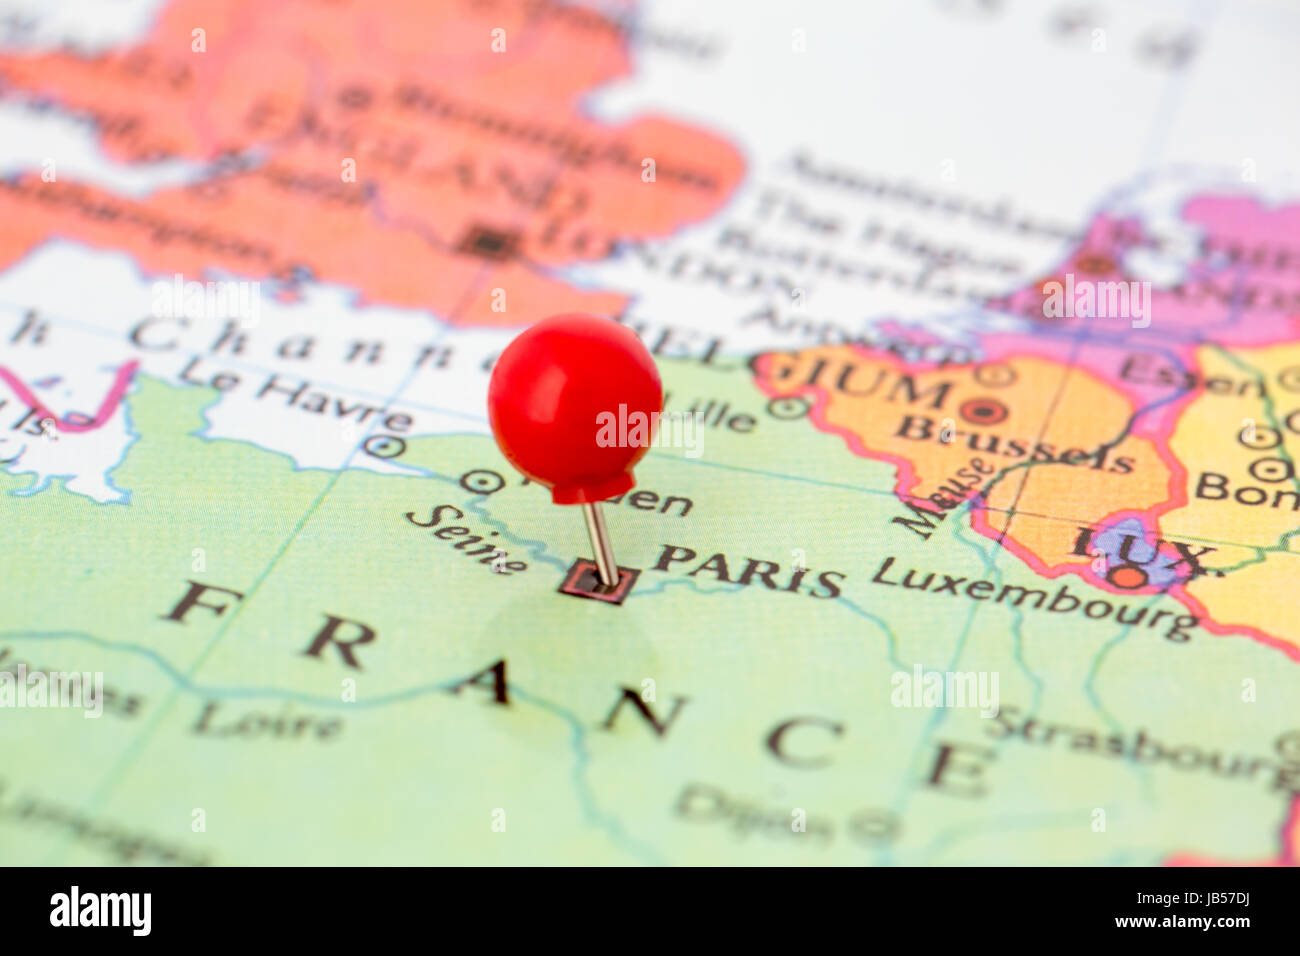 Runde rote Daumen gestochen eingeklemmt durch Stadt Paris in Frankreich Karte. Teil der Kollektion deckt alle wichtige Hauptstädten Europas. Stockfoto